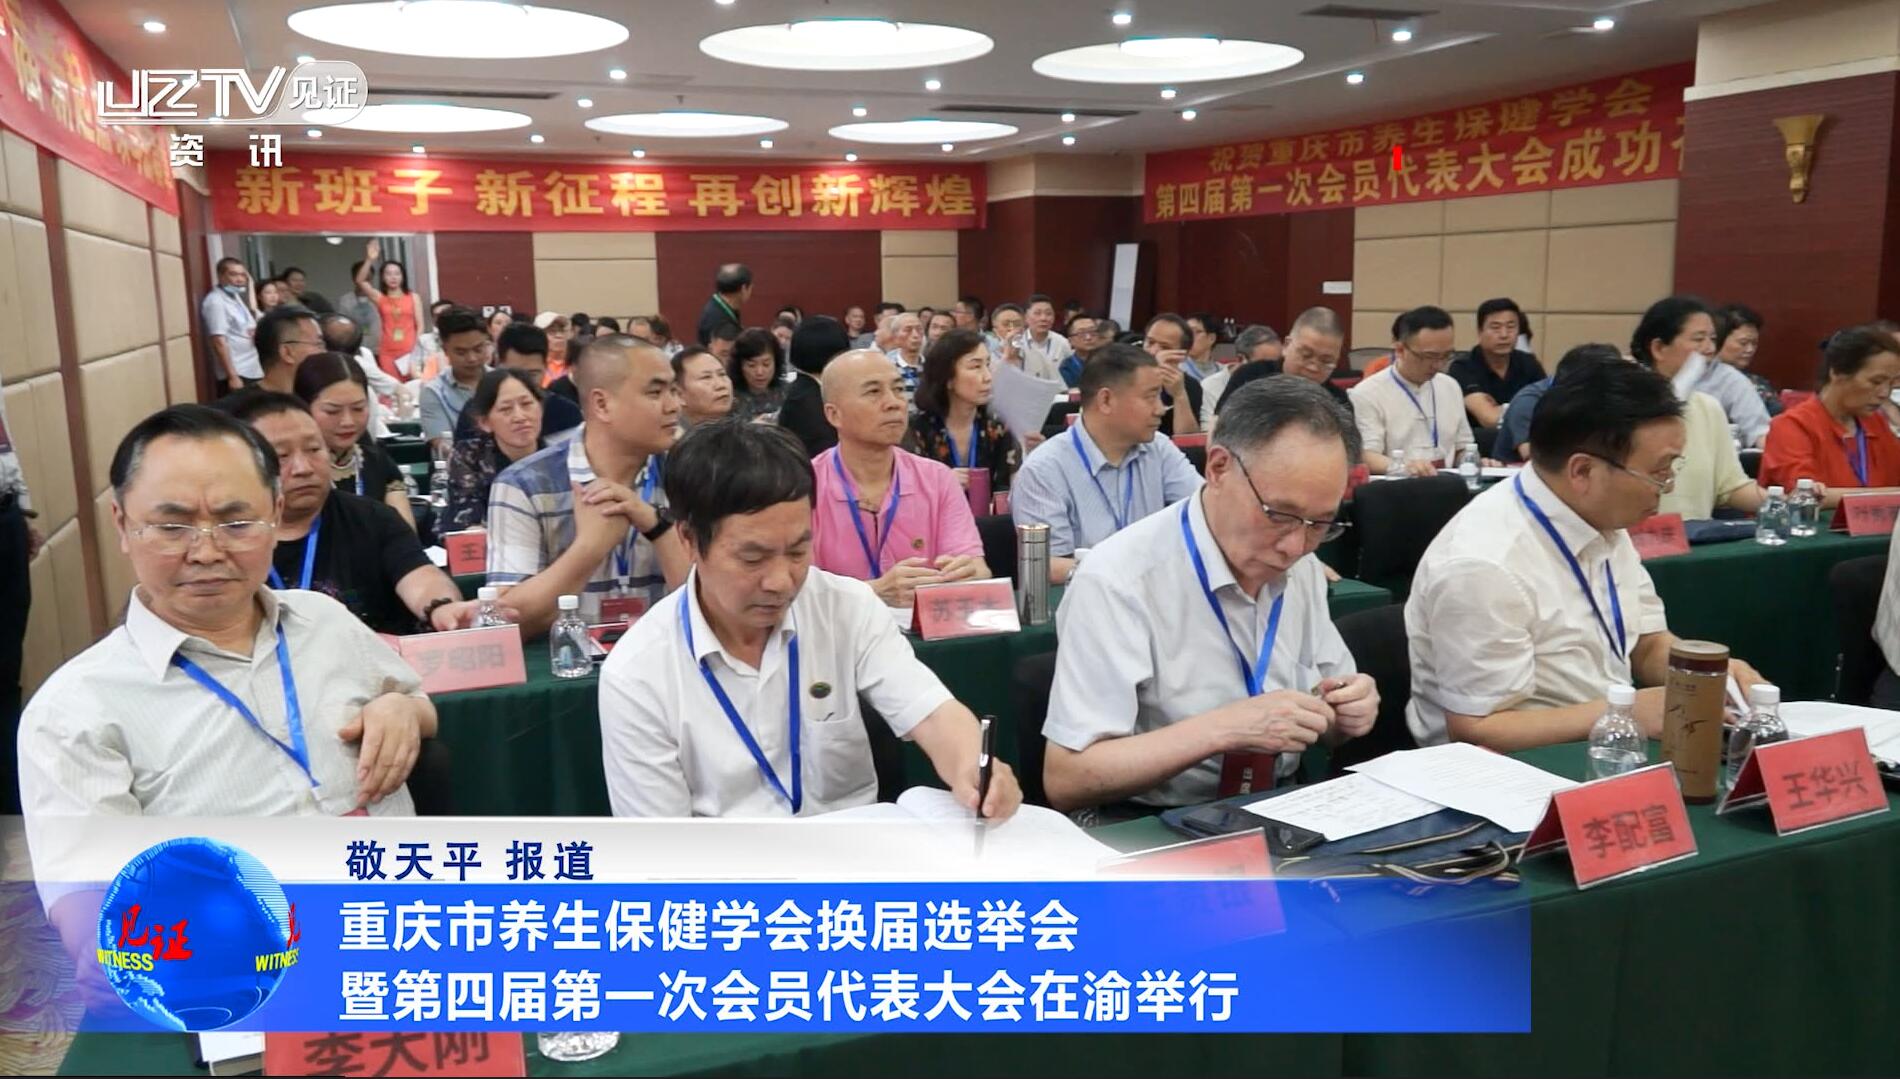 【见证·视频】重庆市养生保健学会换届选举会暨第四届第一次会员代表大会在渝举行